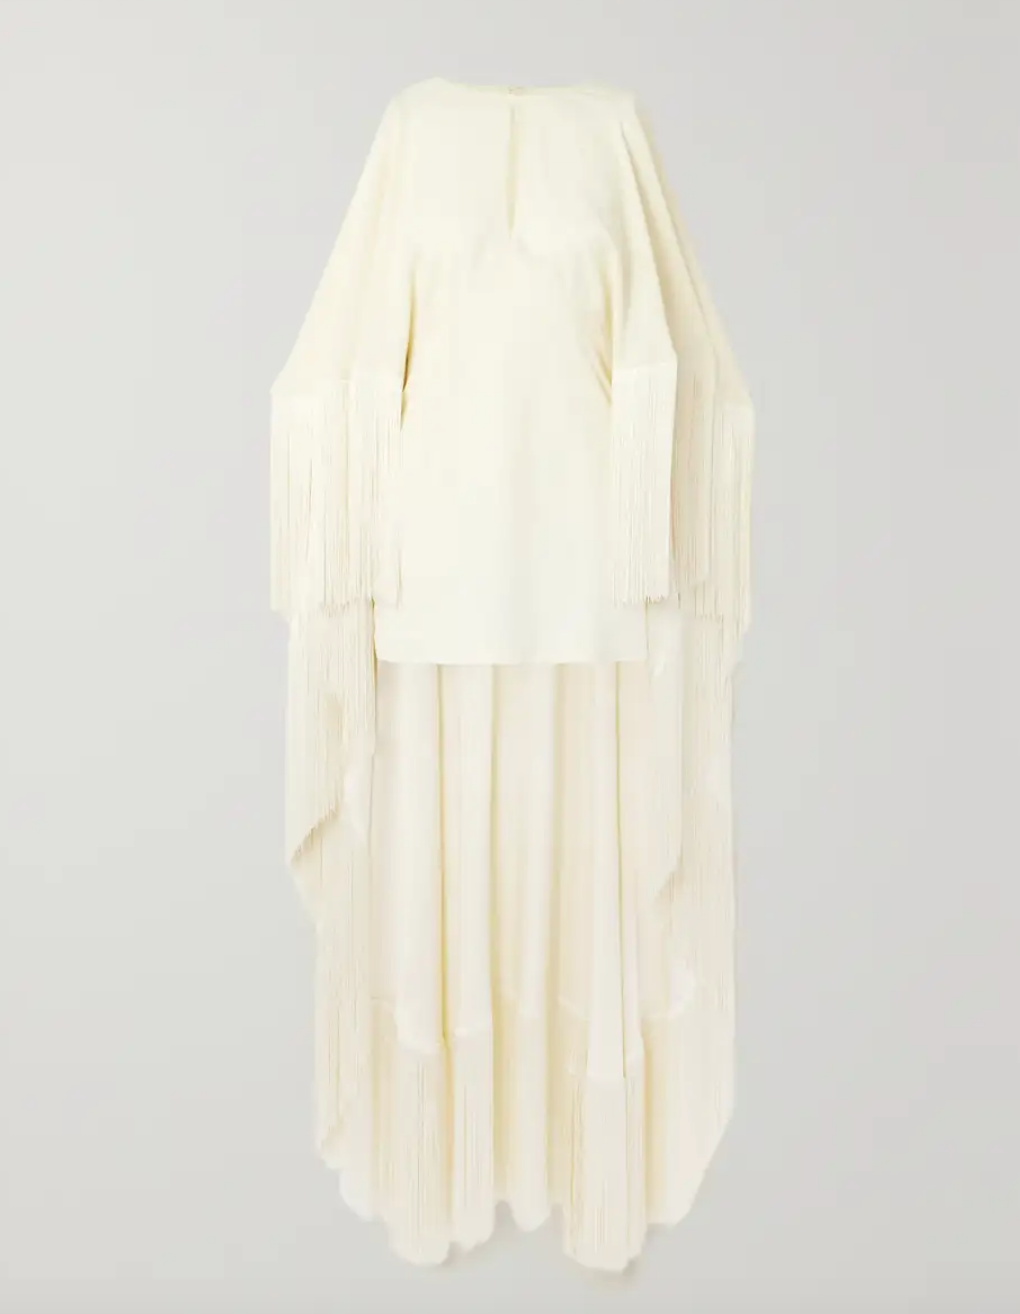 Jessel Taank's White Fringe Dress